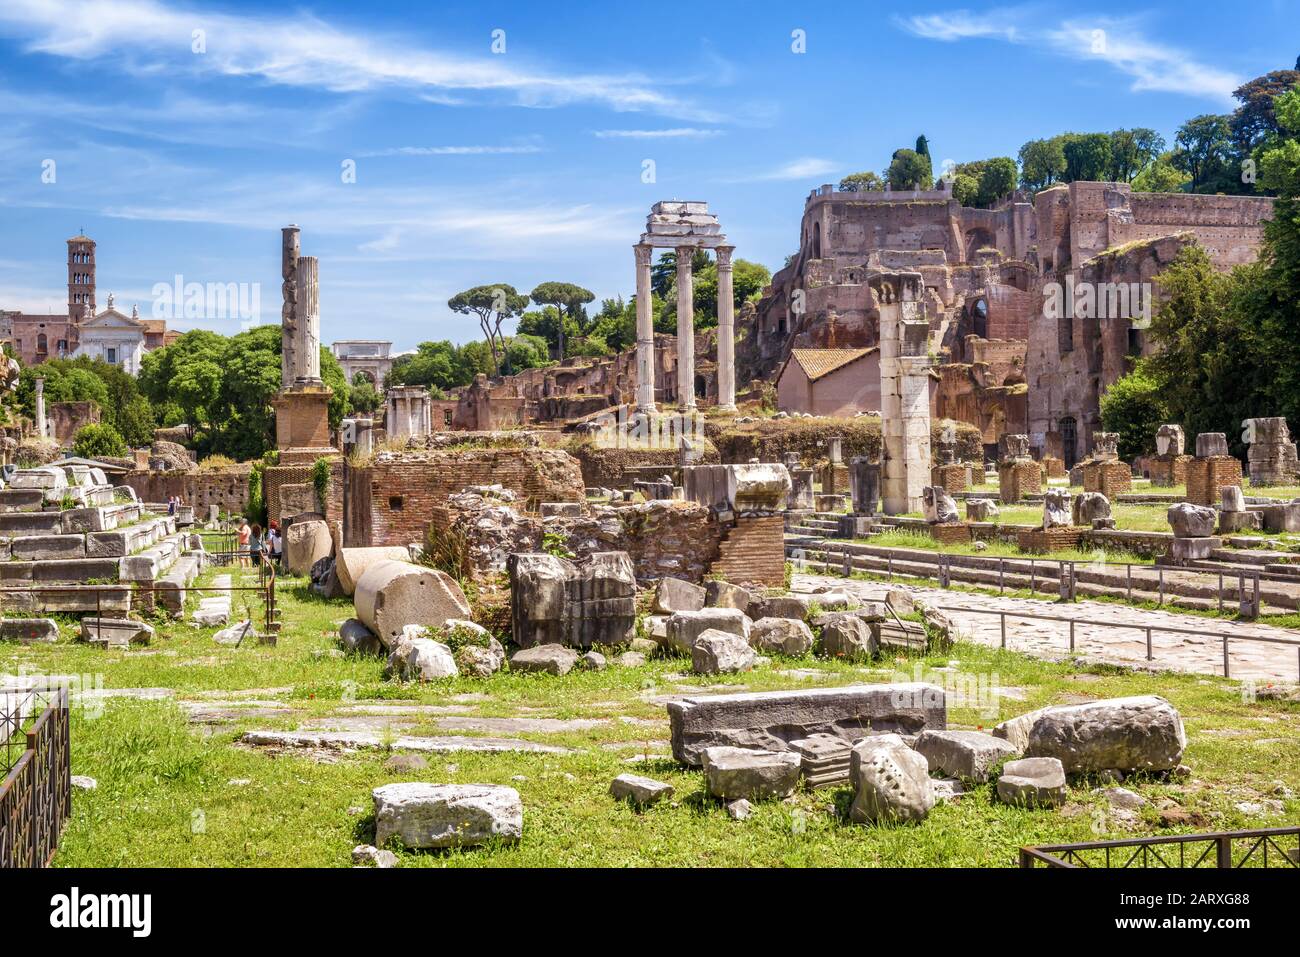 Blick auf das Forum Romanum im Sommer, Rom, Italien. Es ist eine der beliebtesten Touristenattraktionen Roms. Landschaftlich schöner Blick auf die alten Ruinen Roms. Berühmte Überreste von Stockfoto